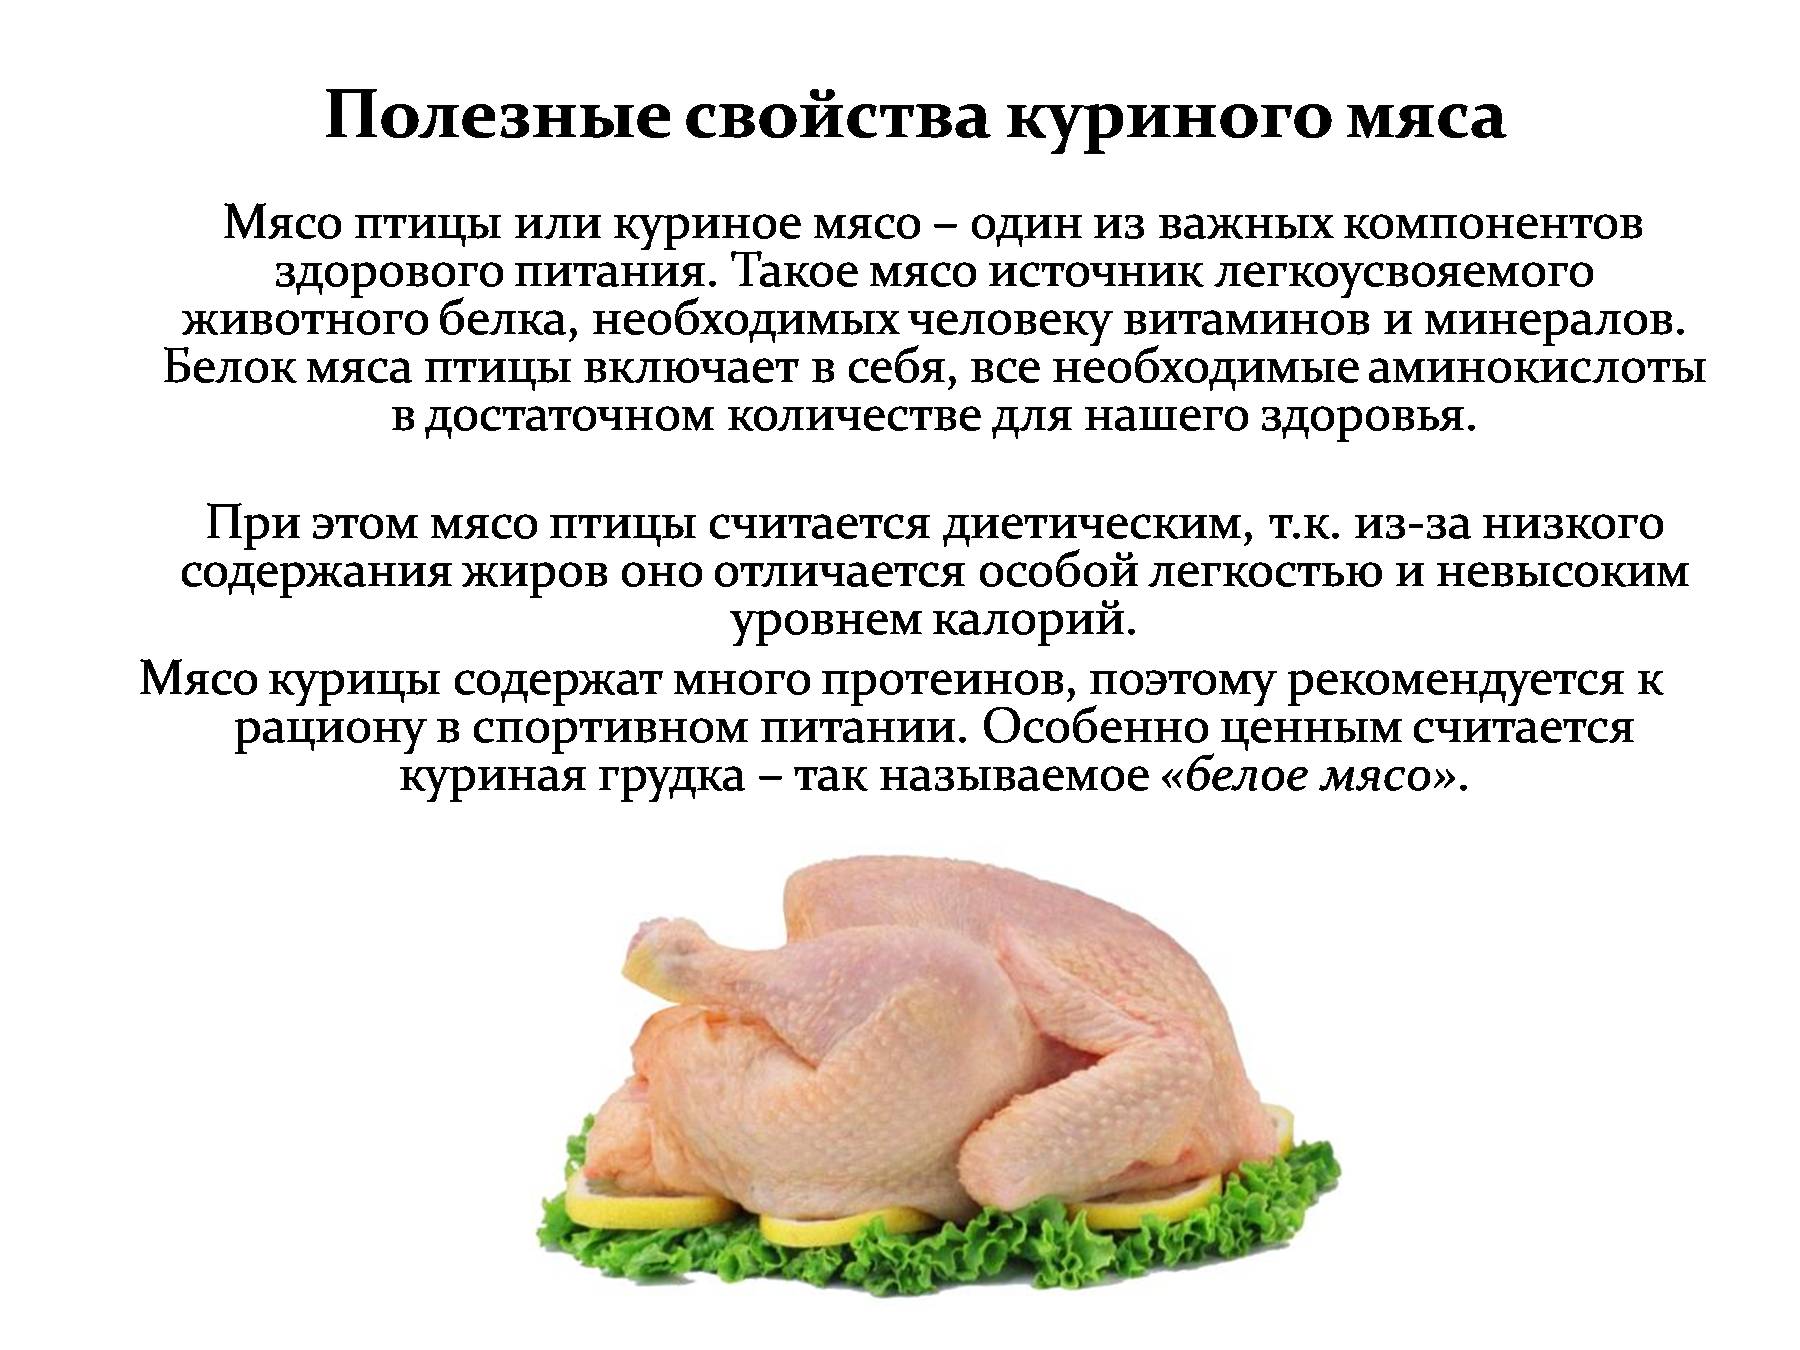 Калорийность куриного вареного мяса: вареная курица калорийность грудка – лучшие народные рецепты еды от сafebabaluba.ru – калорийность курица отварная, по 2-4. химический состав и пищевая ценность.